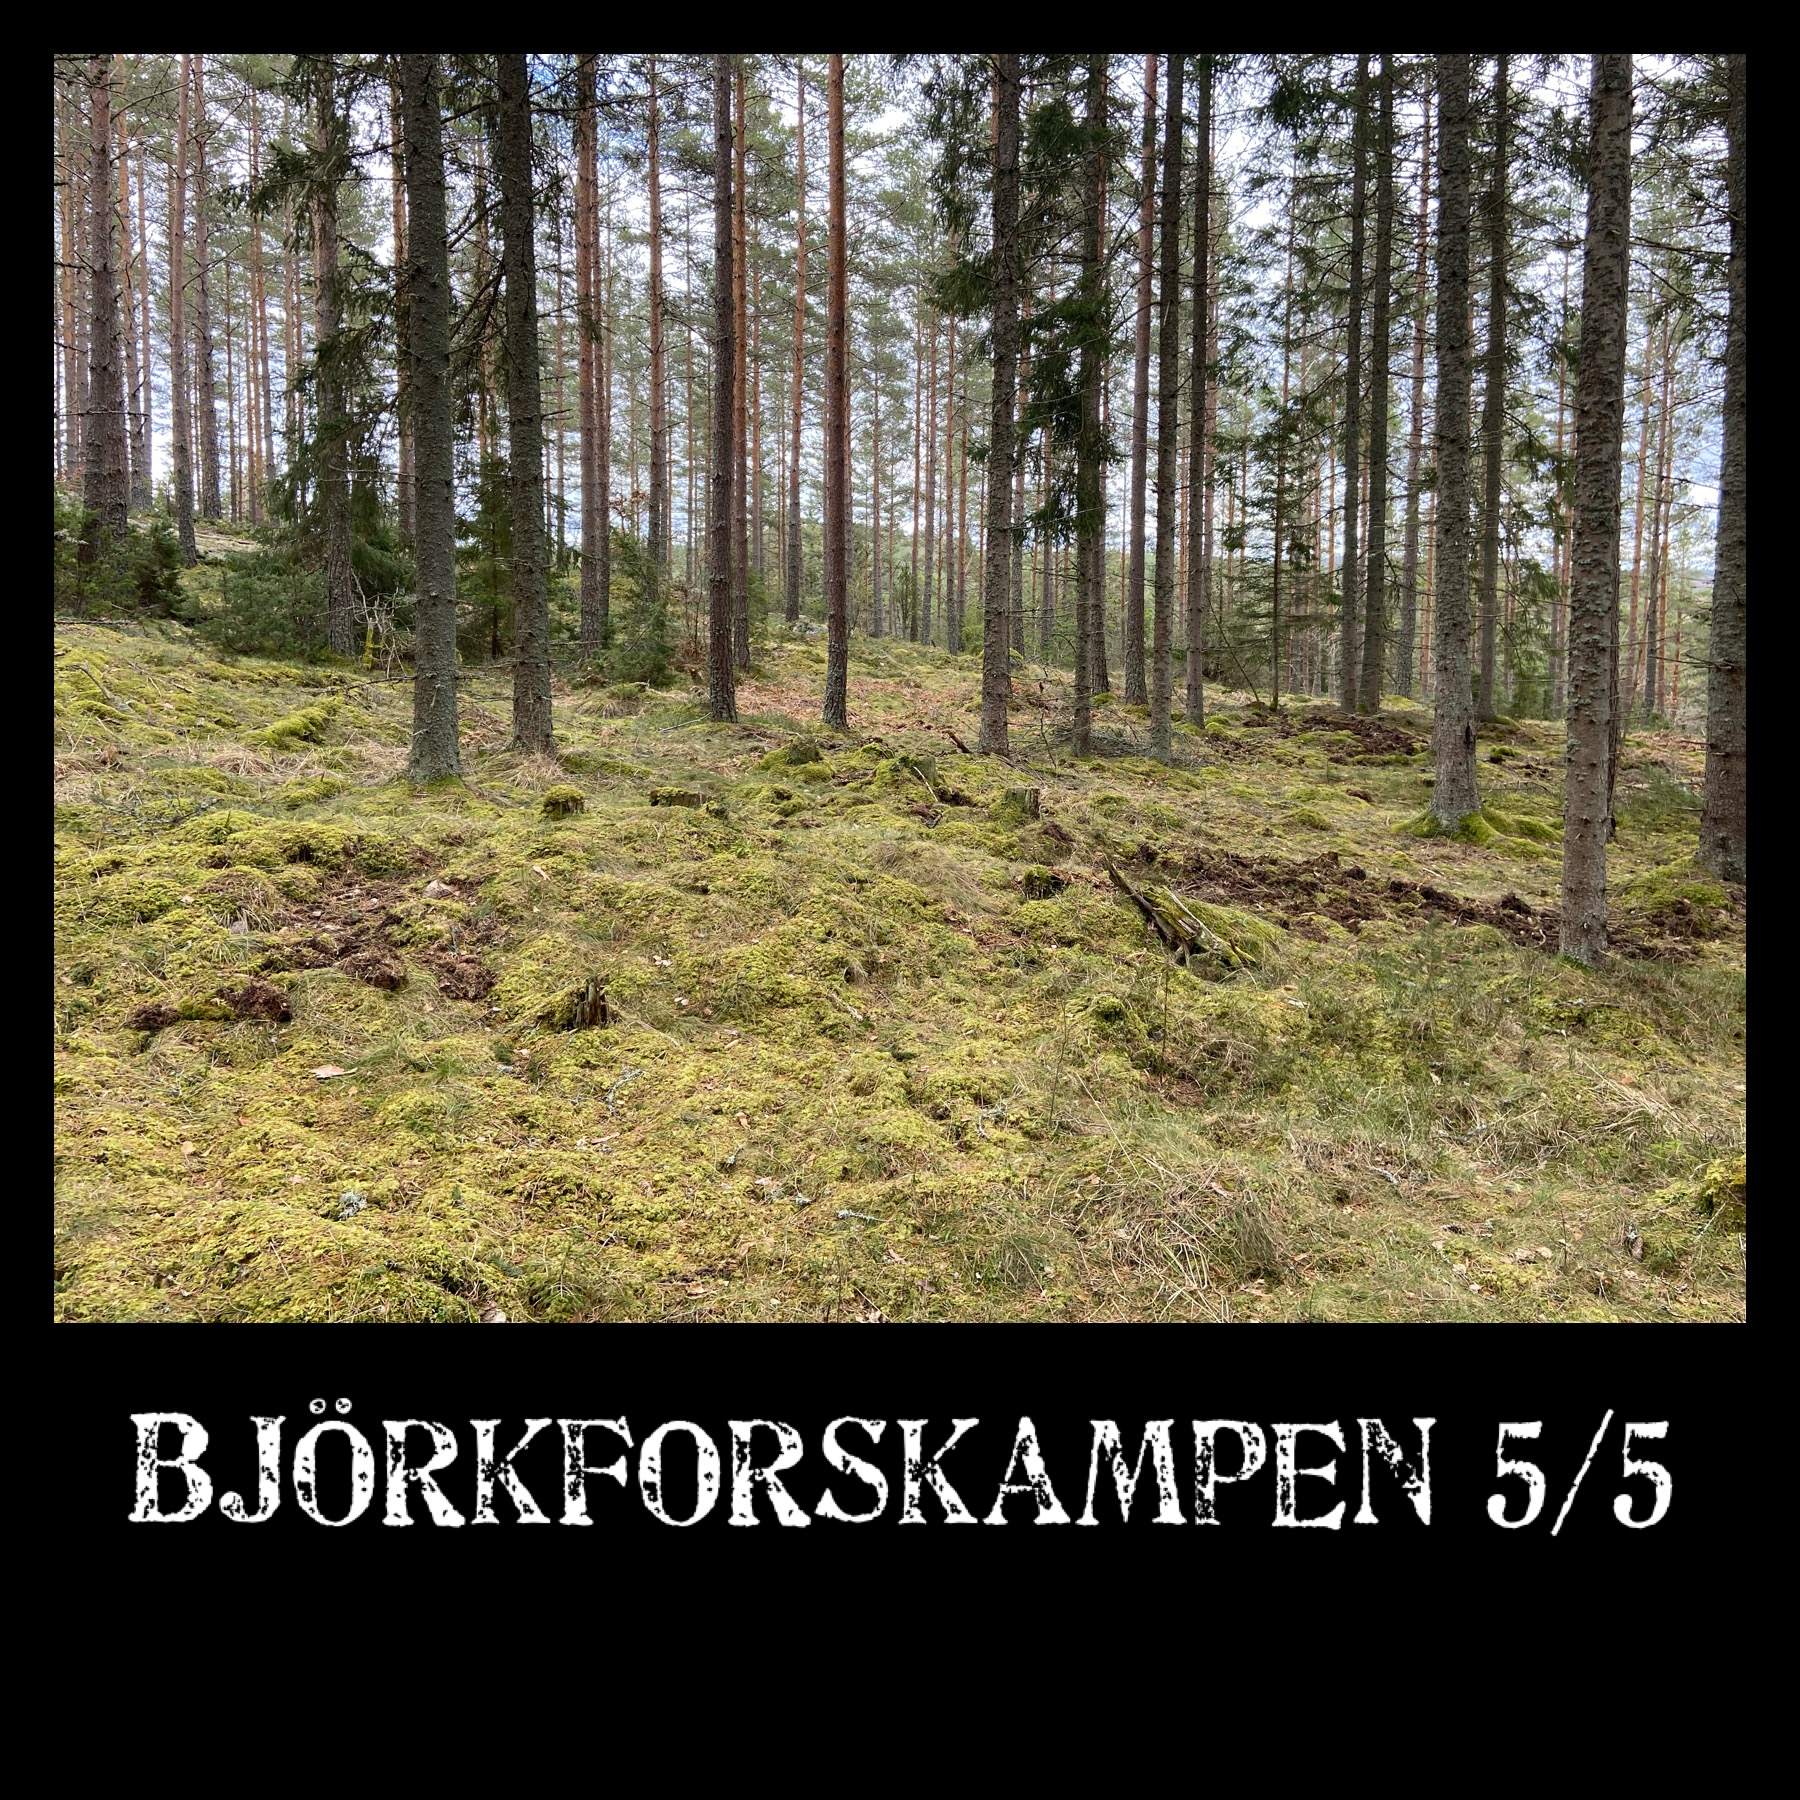 image: Björkforskampen 5/5